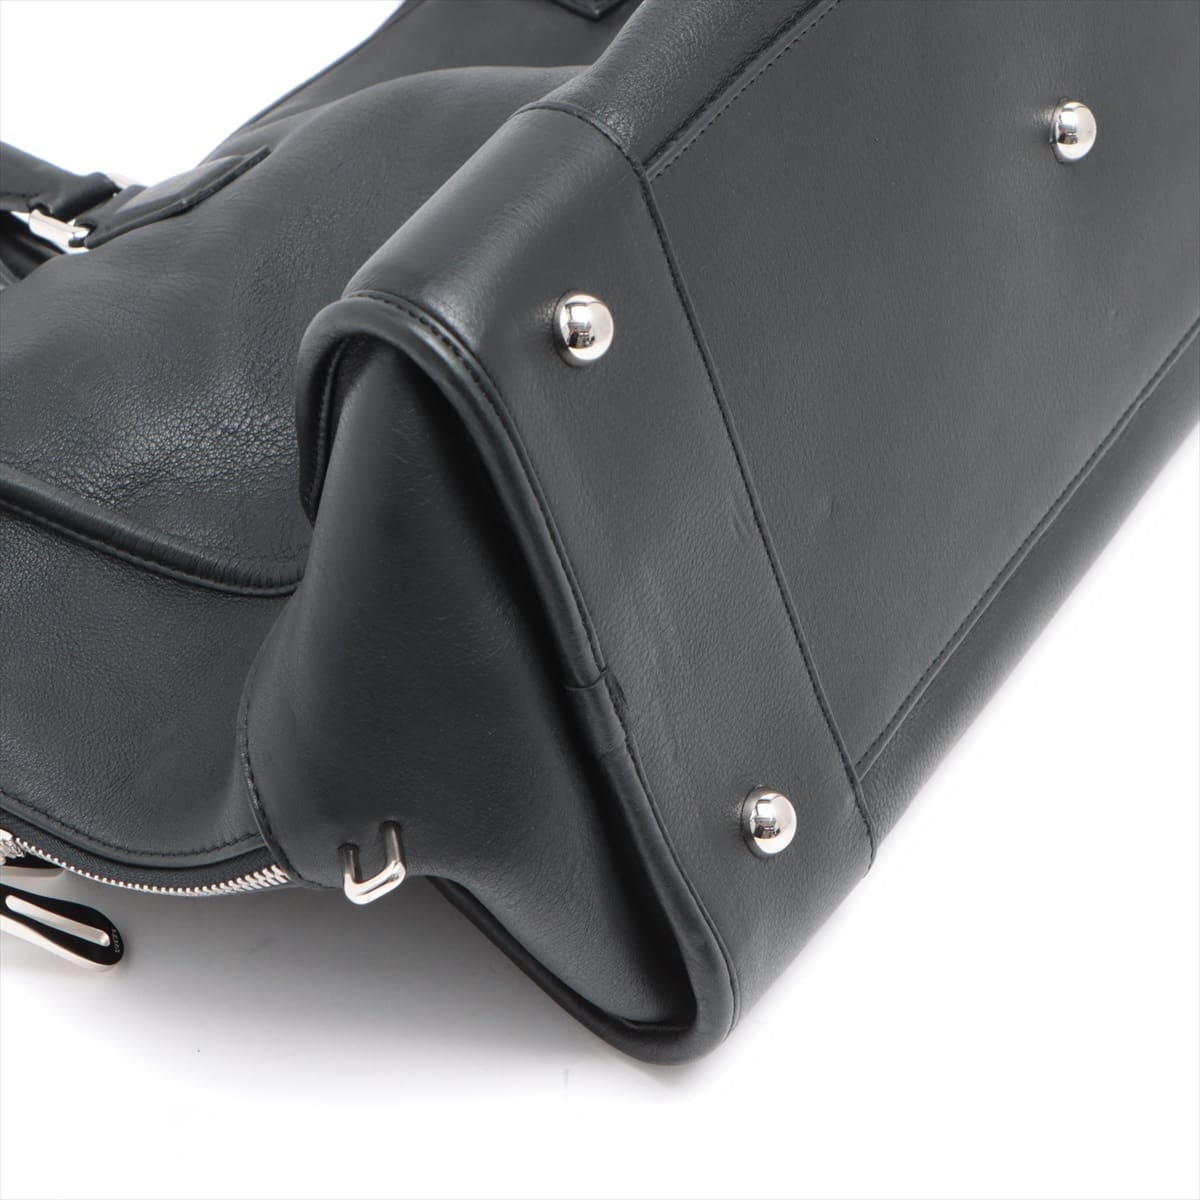 Loewe Amazona44 Leather Hand bag Black